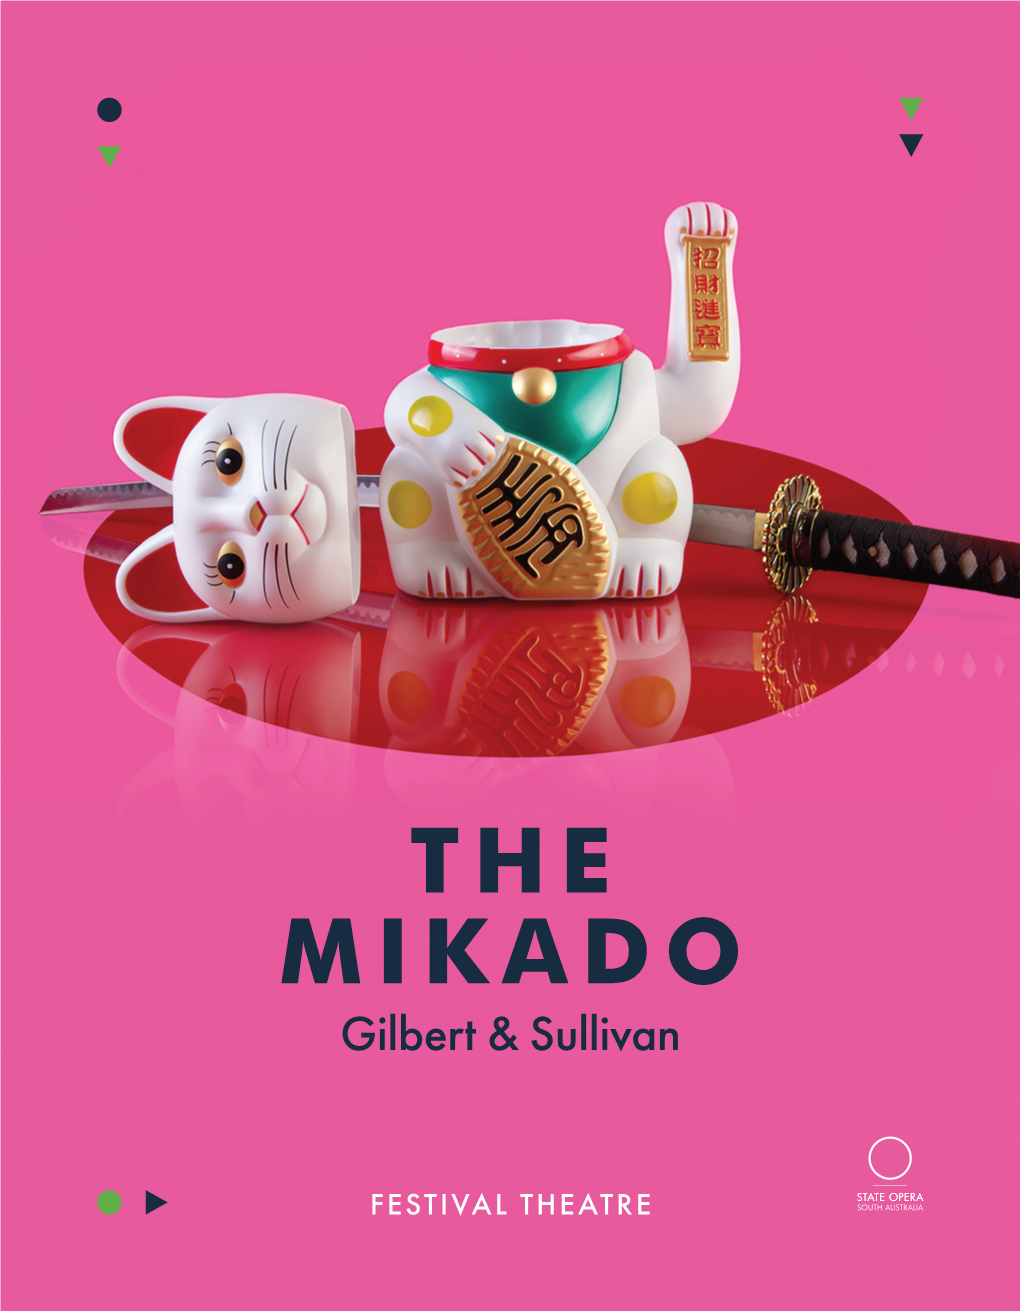 THE MIKADO Gilbert & Sullivan